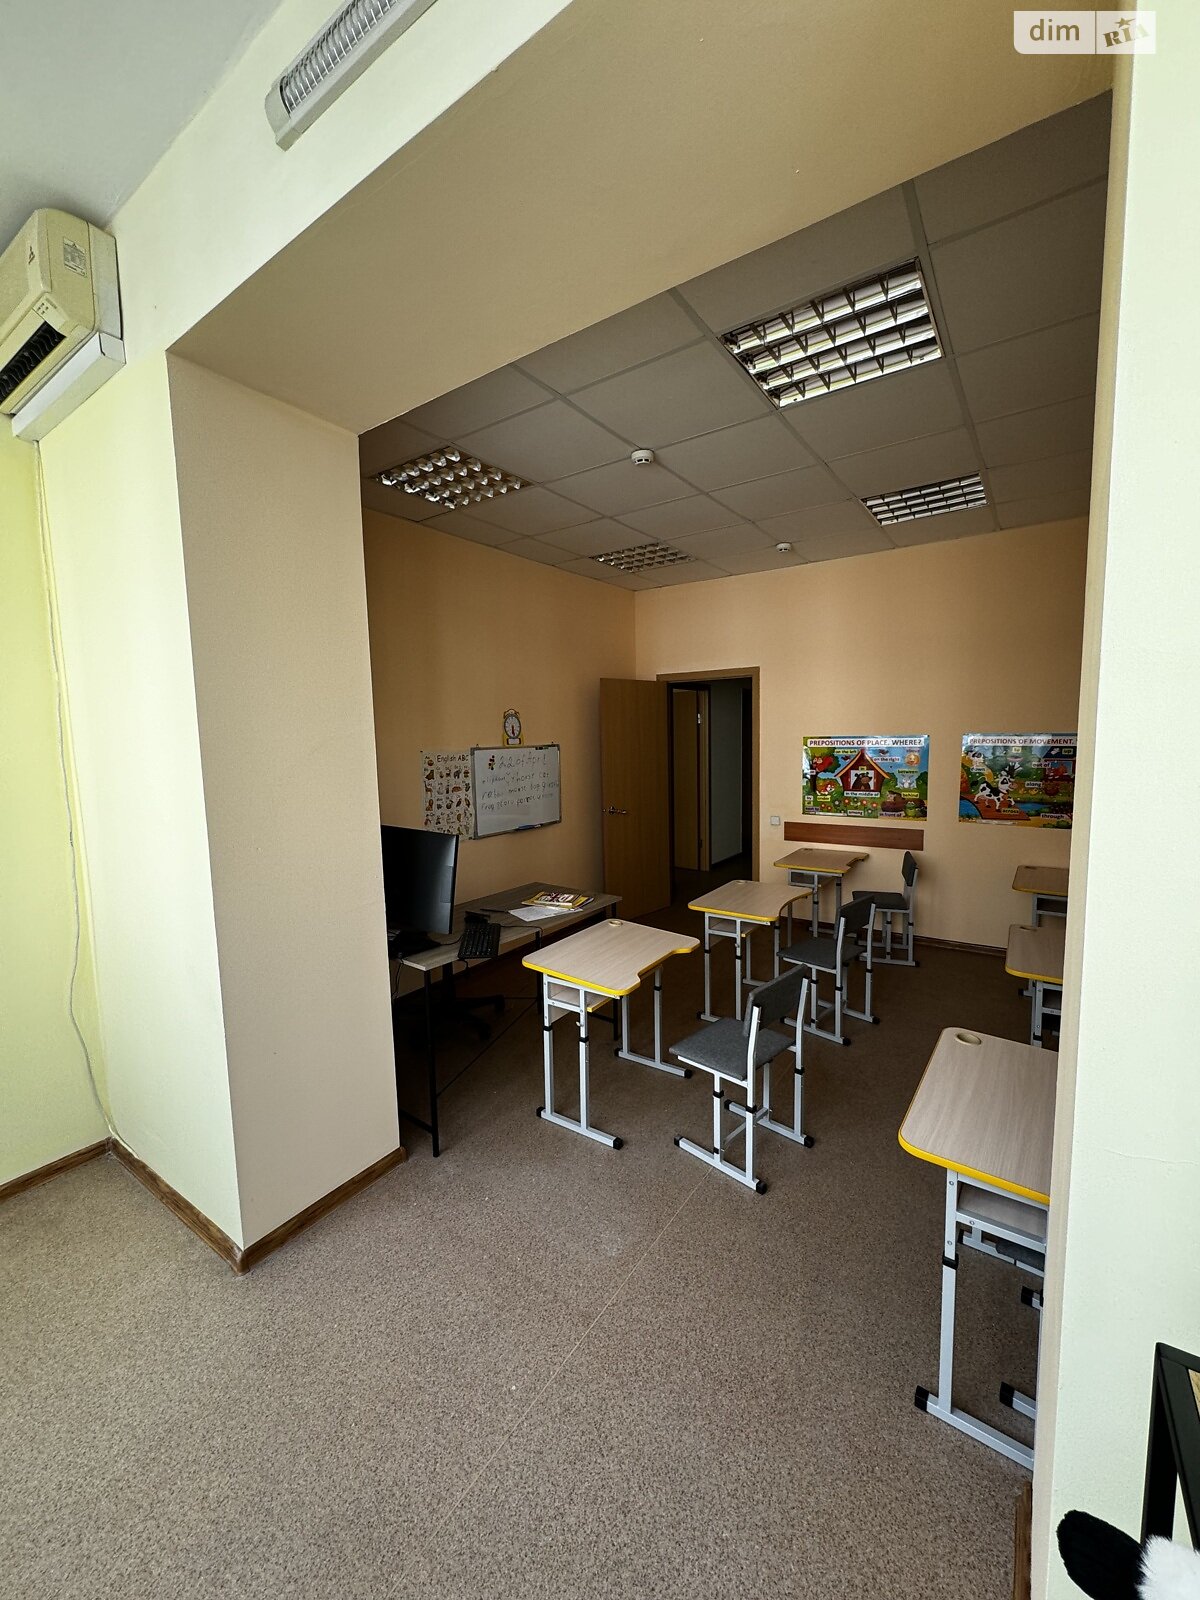 Аренда офисного помещения в Николаеве, Шевченко улица 59, помещений - 1, этаж - 2 фото 1